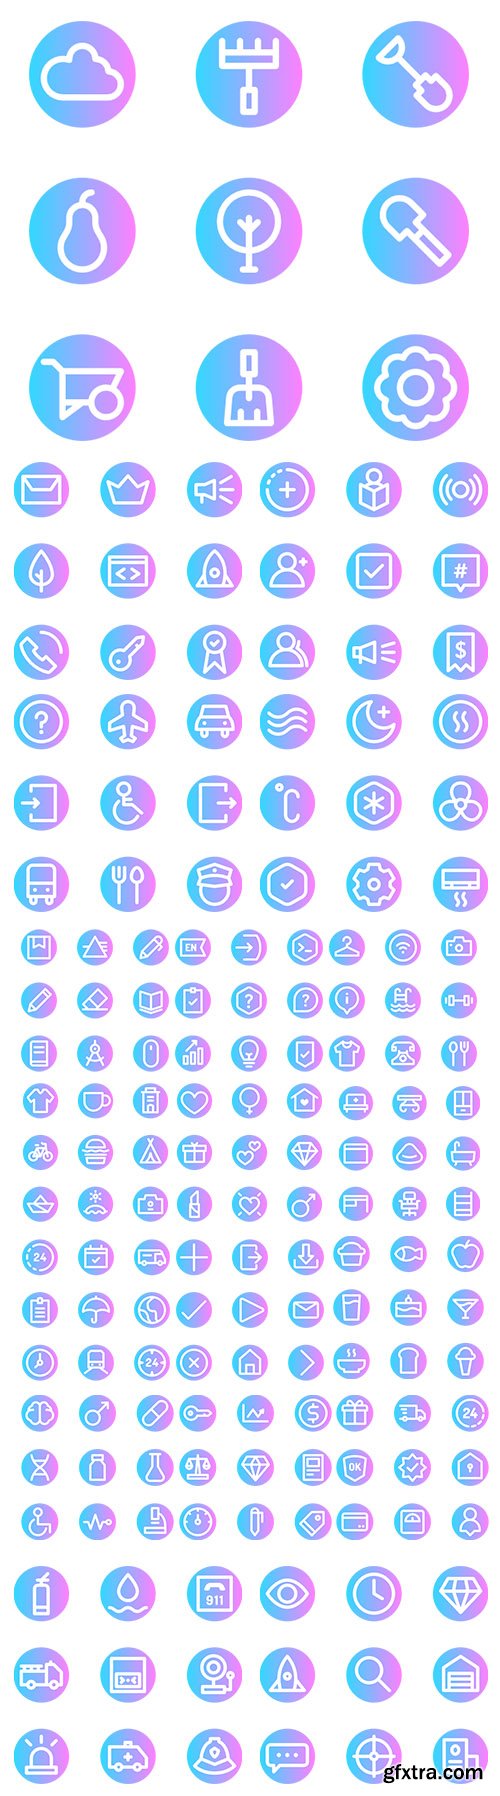 900+ Basic Rounded Circular Icons Set